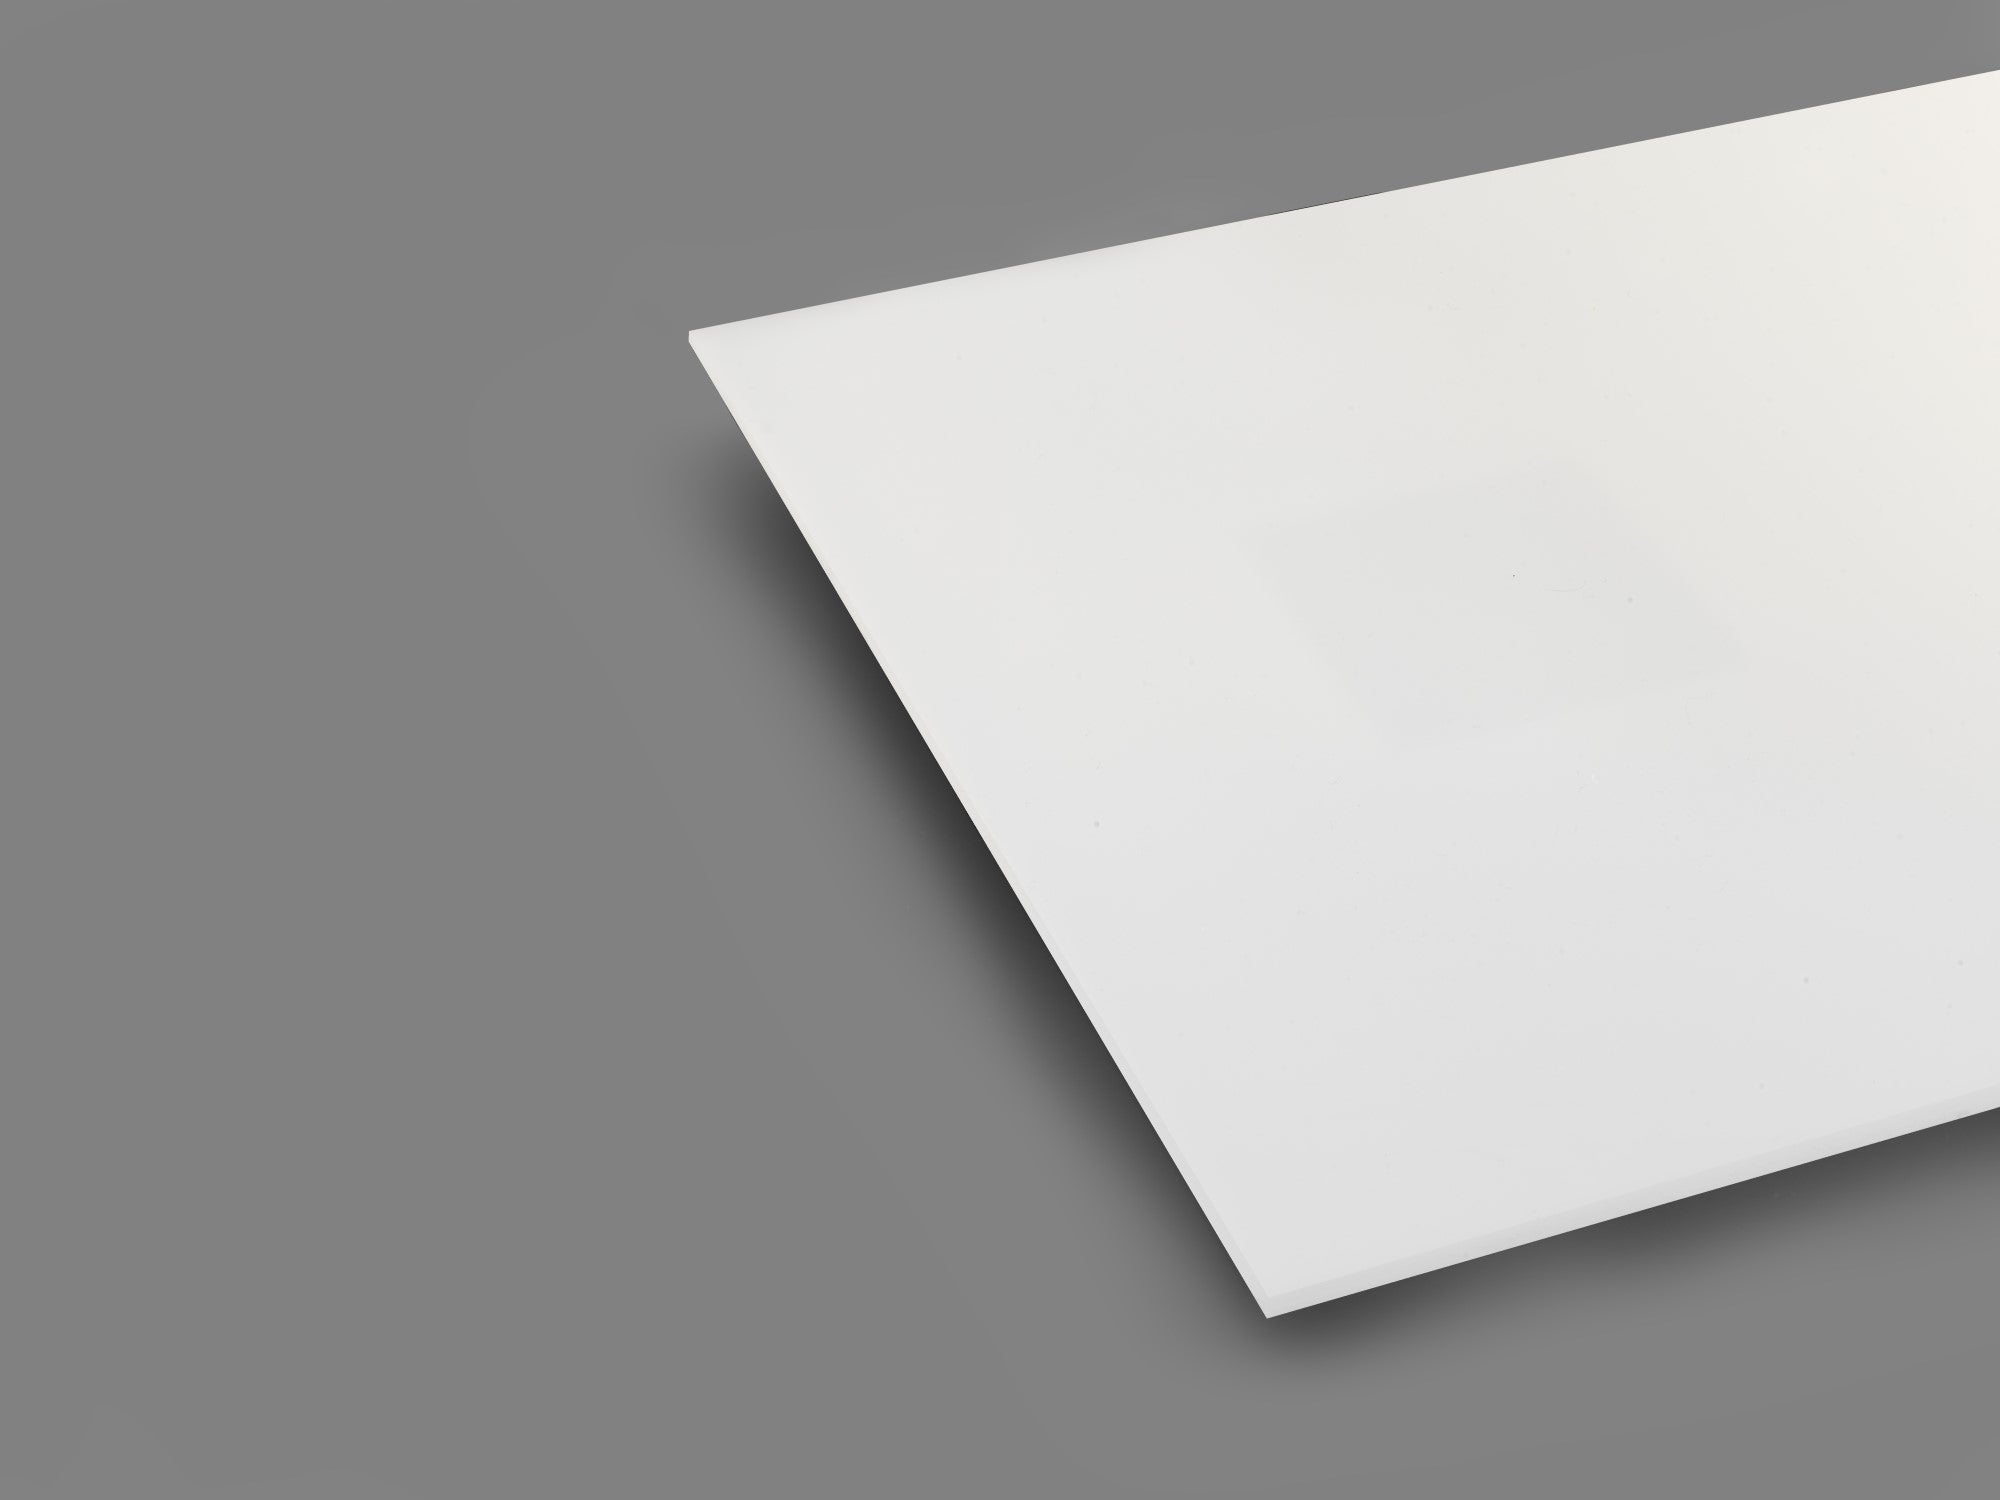 White 7328 Translucent Acrylic Sheet